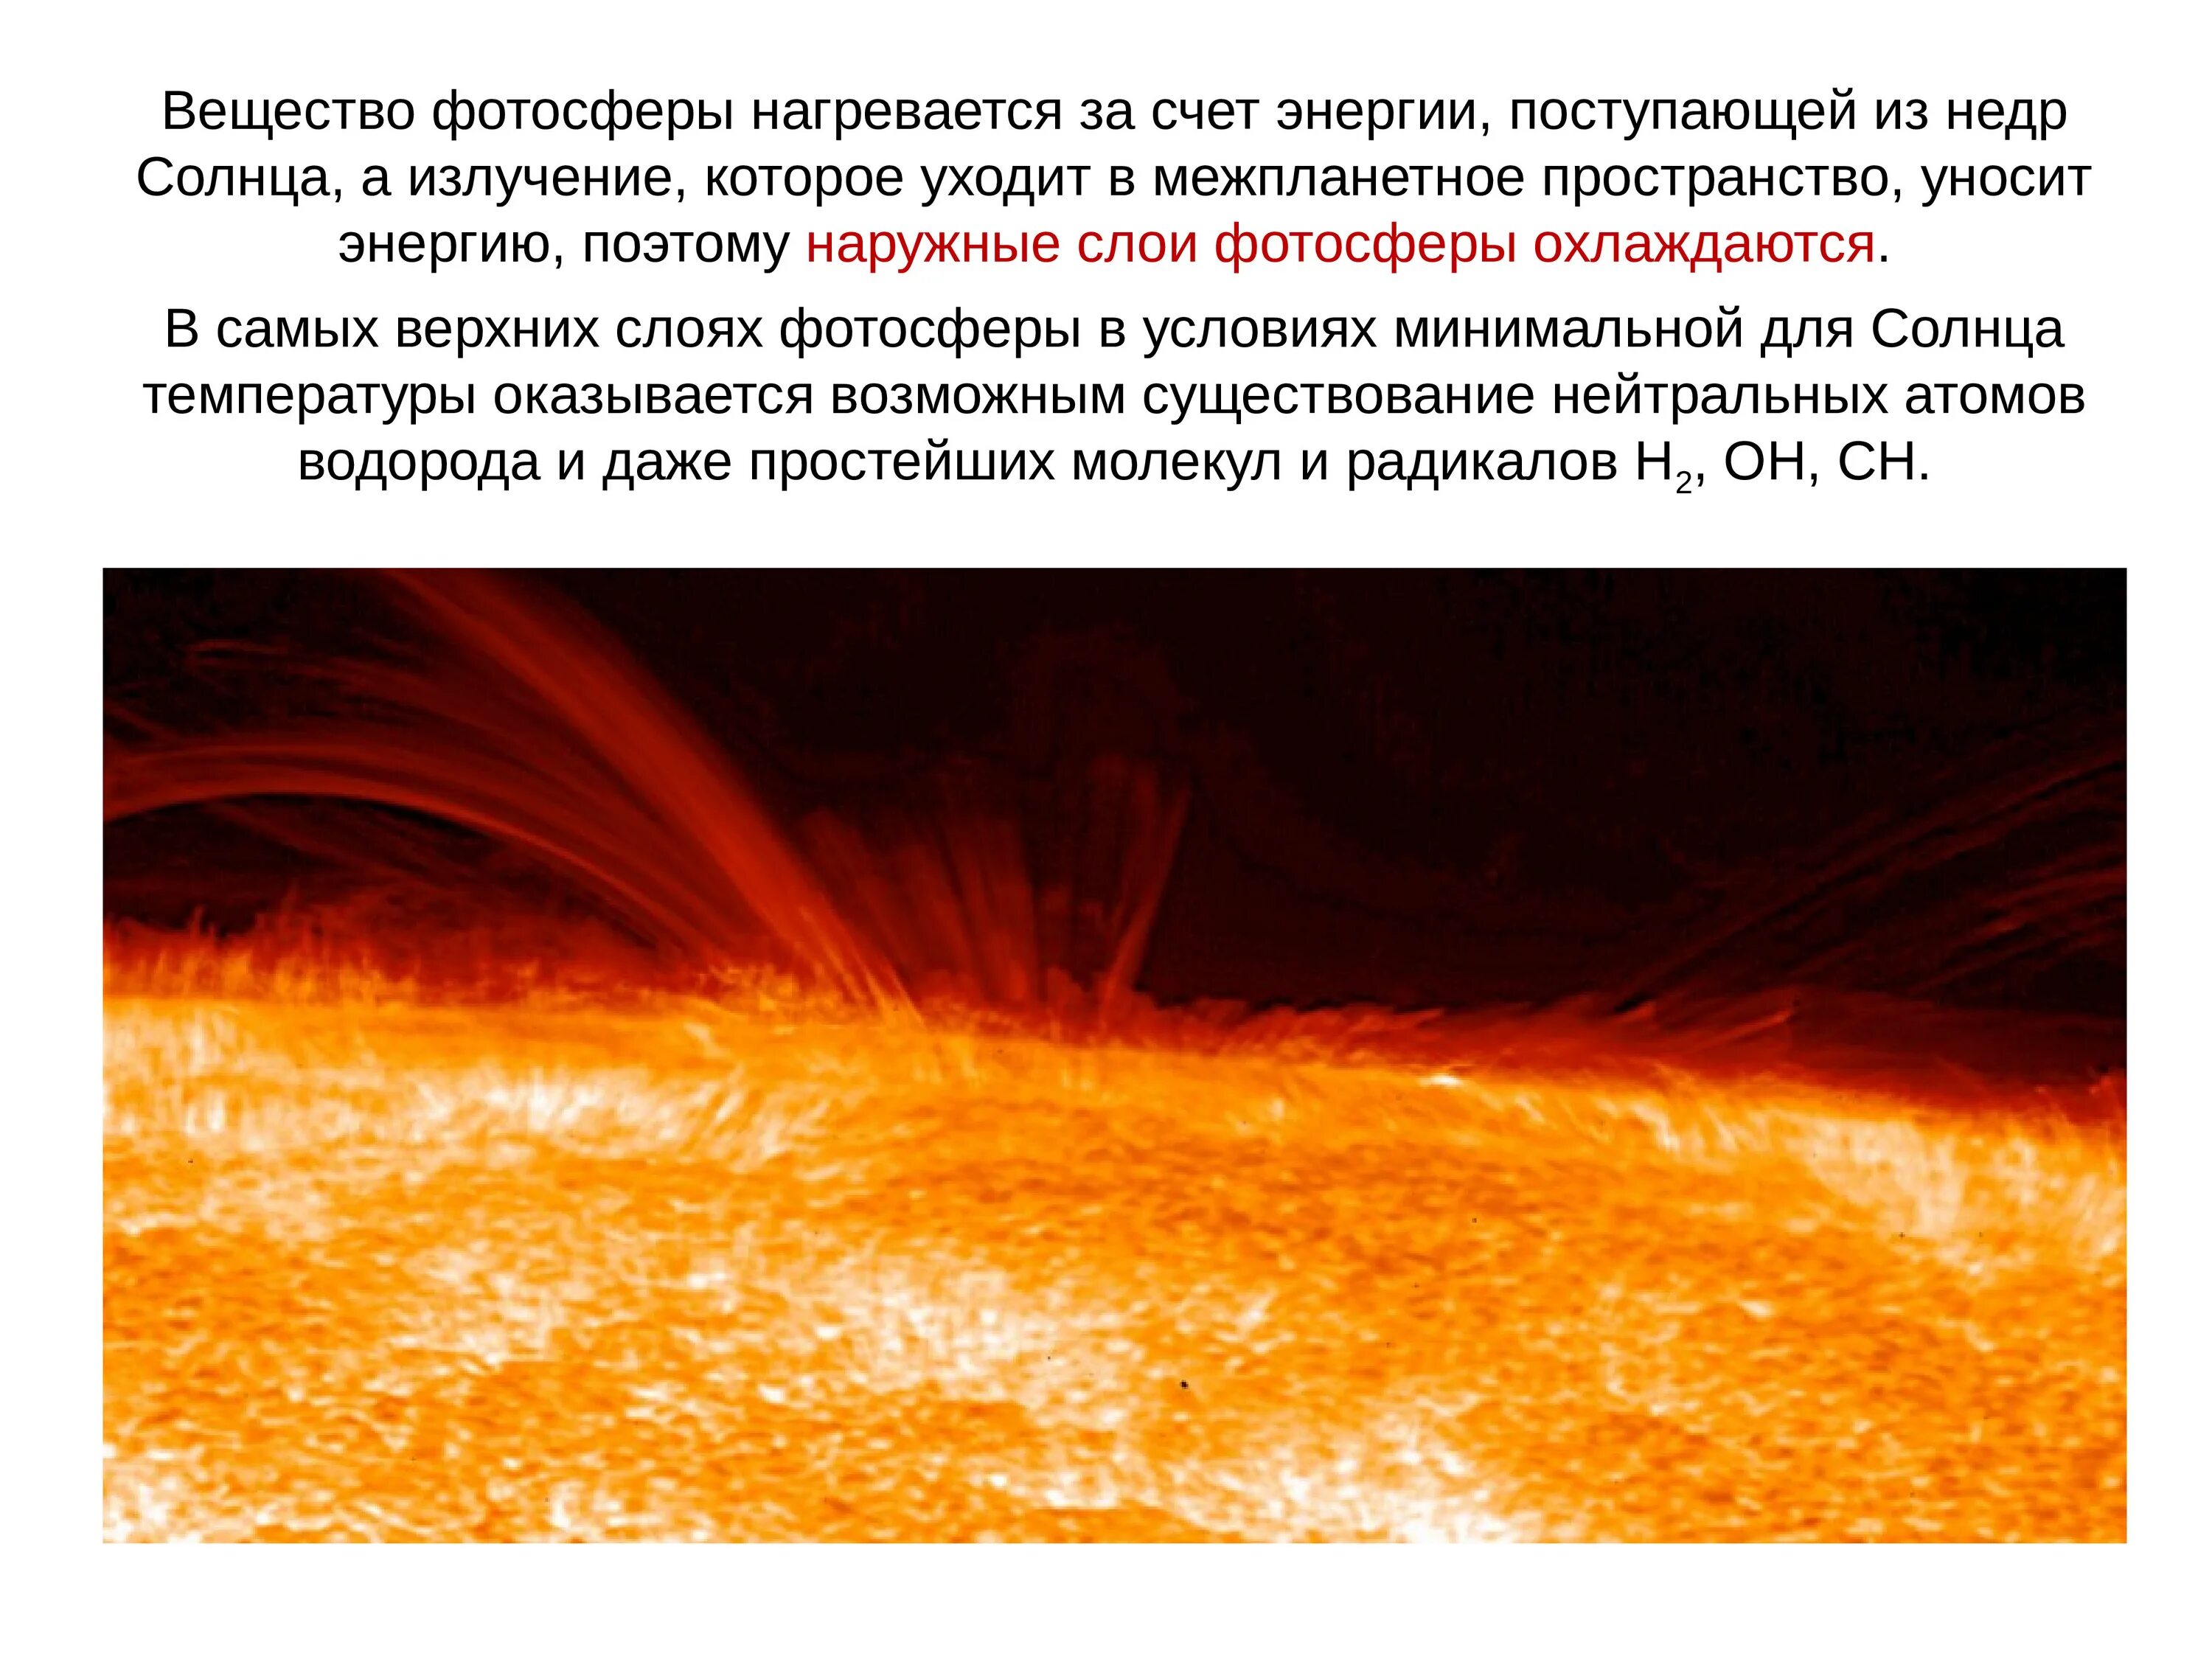 Фотосфера солнца. Атмосфера солнца. Слои солнца Фотосфера. Атмосфера солнца и Солнечная активность. Верхний слой солнечной атмосферы